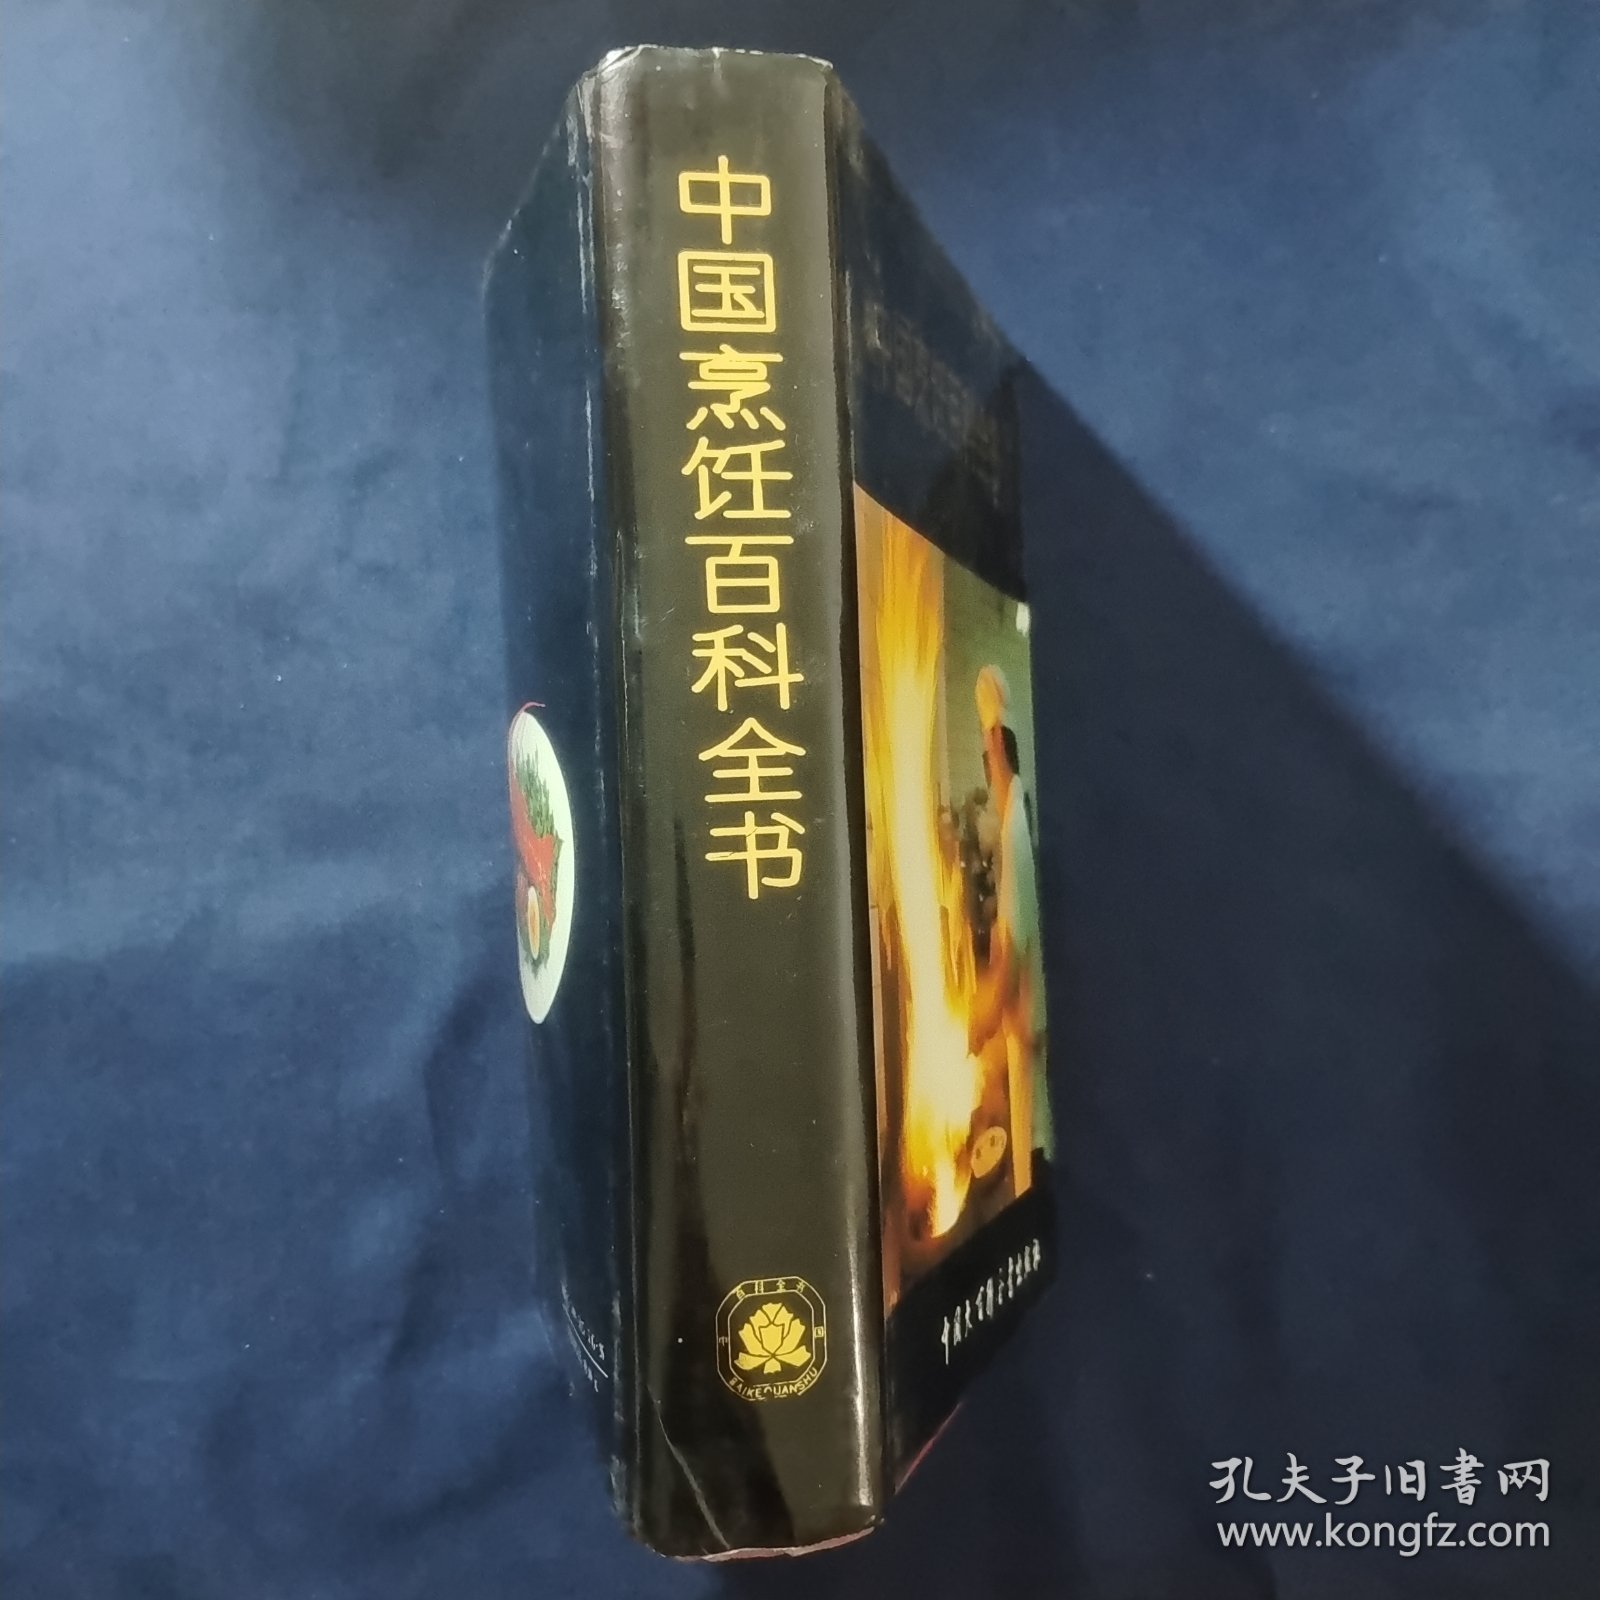 中国烹饪百科全书